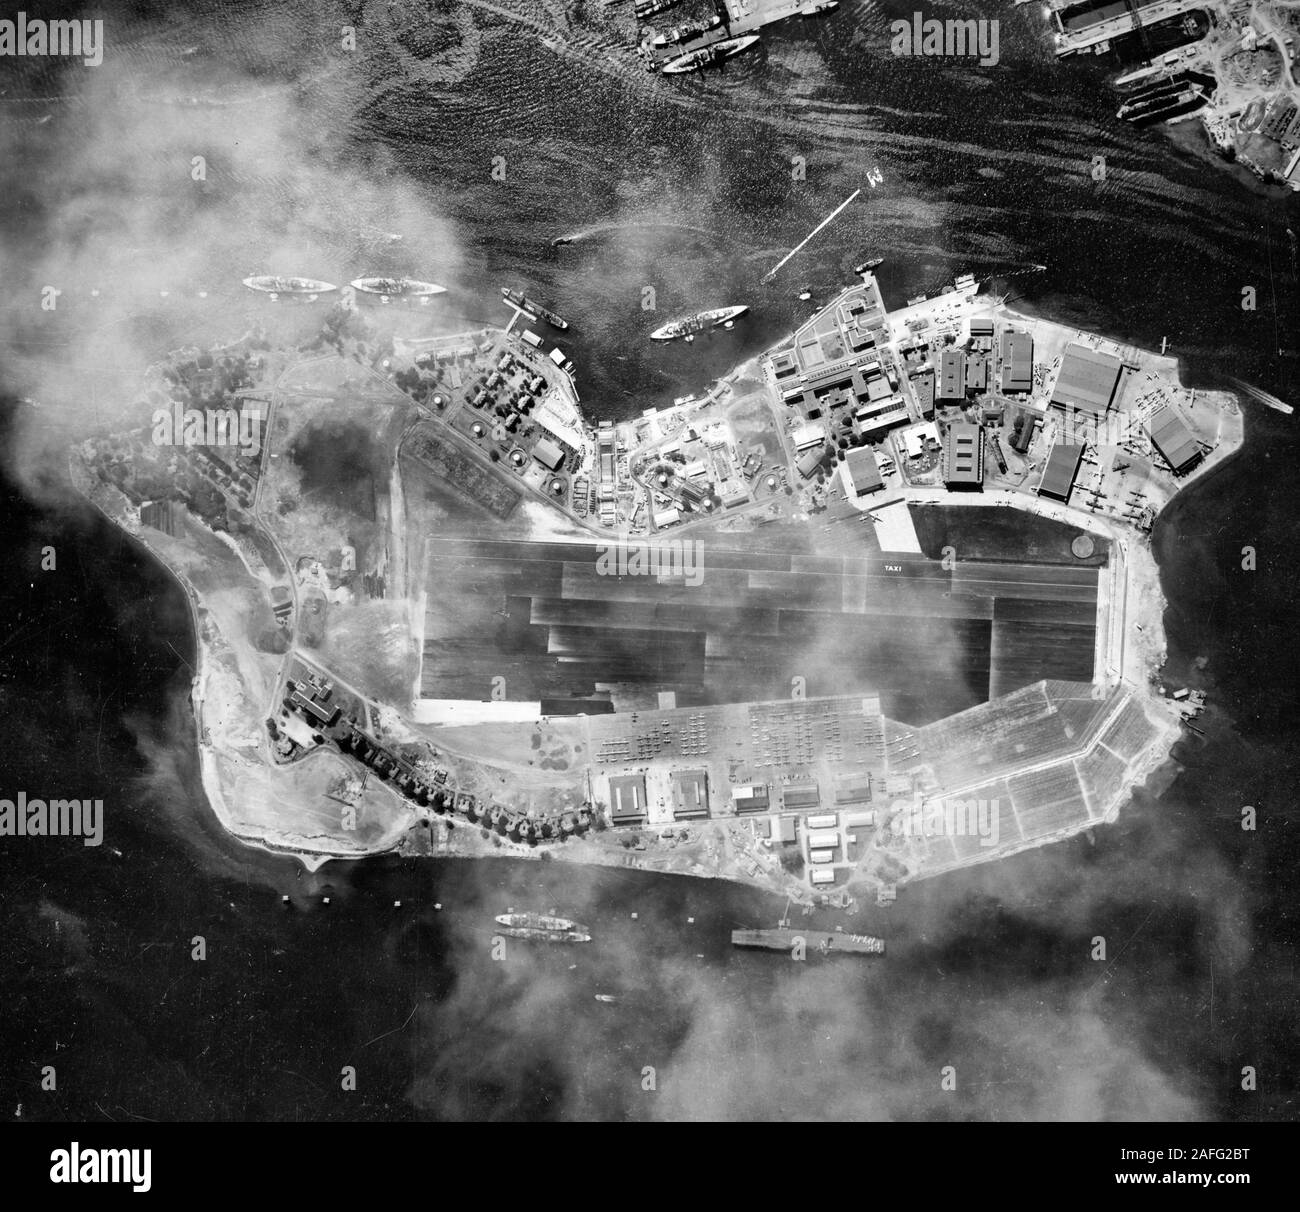 Pearl Harbor, Oahu, Hawaii-Luftbild von Ford Island, 22. Oktober 1941 übernommen. USS Saratoga (CV-3) wird in der unteren rechten Zentrum festgemacht, auf der nordwestlichen Seite der Insel. Drei Schlachtschiffe und ein öltuch entlang Battleship Row festgemacht, auf der südöstlichen Seite der Insel. Ein weiteres Schlachtschiff ist neben 1010 Dock, oben in der Mitte. In der extremen Rechten oberen Ecke ist die Navy Yard Trockendock Nummer Zwei, im Bau und Floating drydock YFD-2. Etwa 22 PBY patrol Ebenen bei Seaplane Base die Naval Air Station geparkt, auf der rechten oberen Punkt des Ford Insel. Vor dem Zweiten Weltkrieg Stockfoto